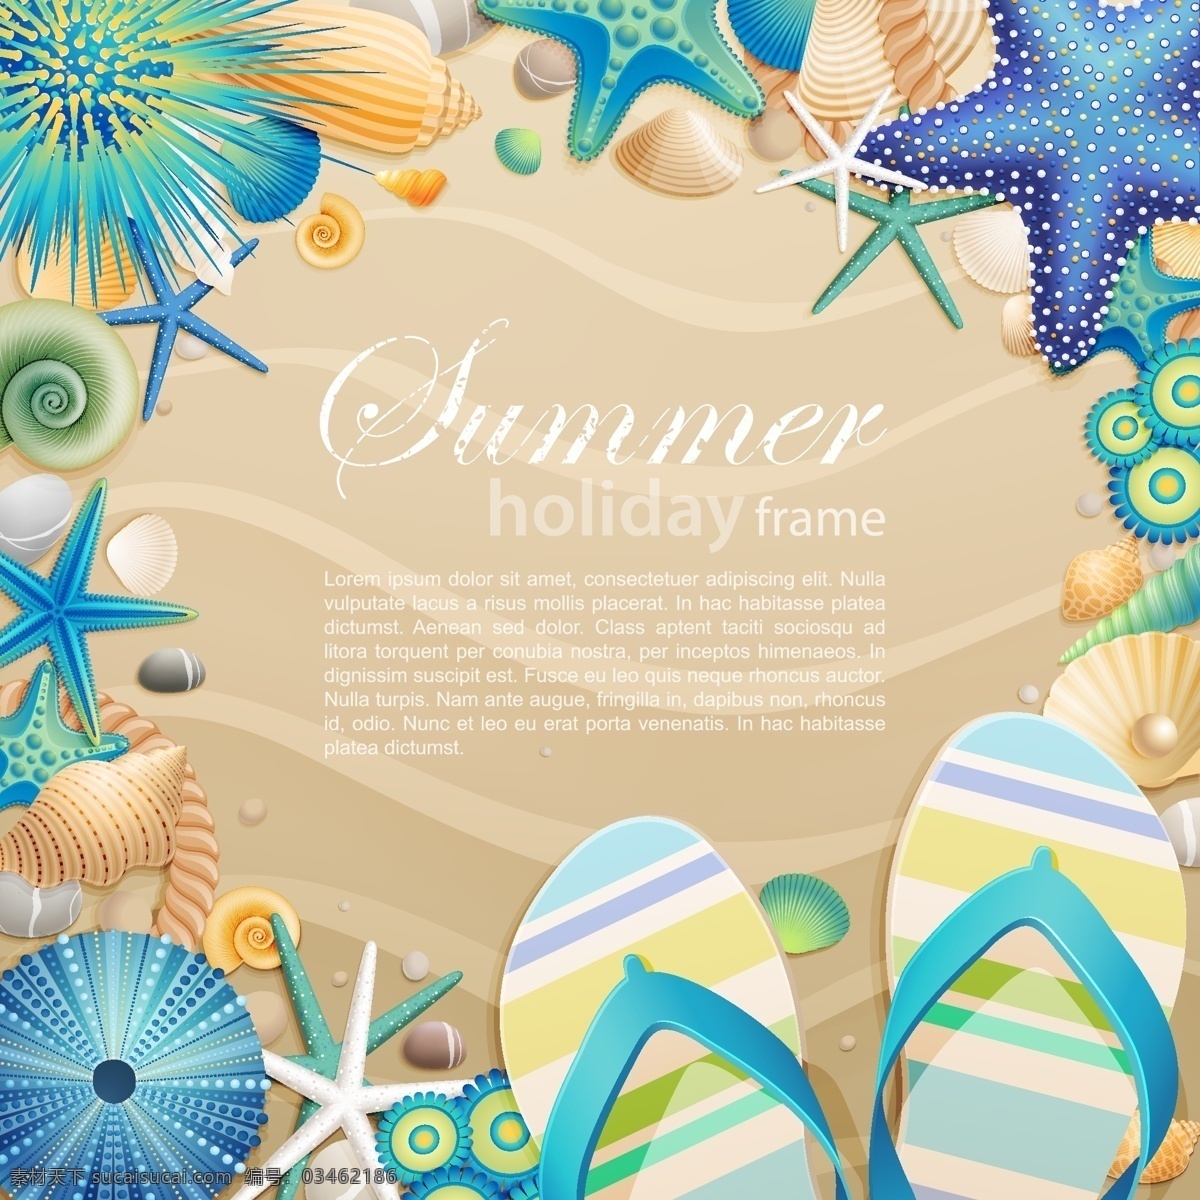 夏日 海滩 图案 沙滩 度假 假日 假期 阳光 拖鞋 海水 创意宣传 海报 插画图案 分层 风景